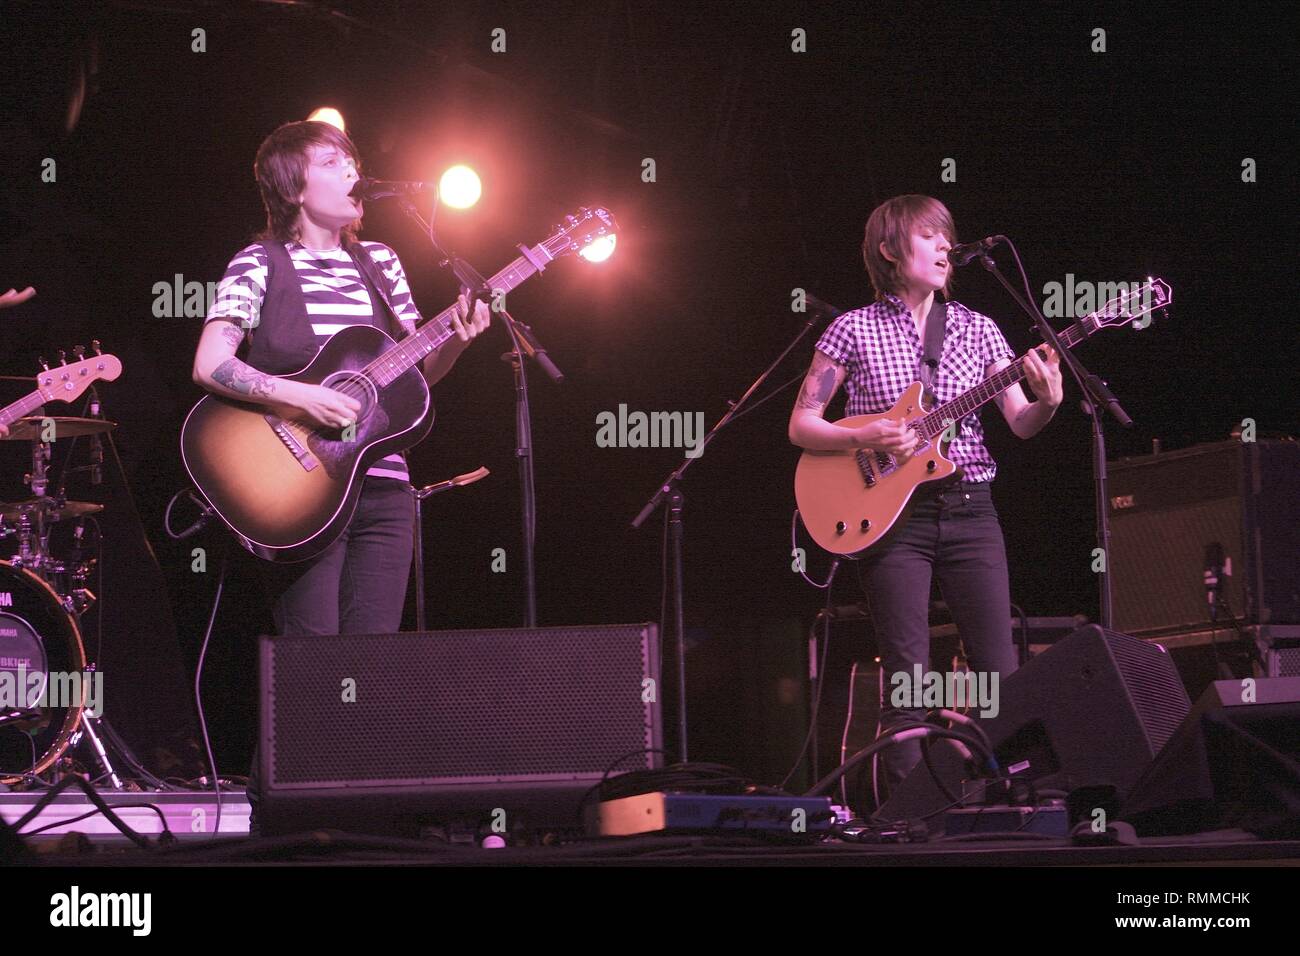 Il cantante canadese parolieri e gemelli identici Tegan Quin e Sara Quin, delle indie rock band di Tegan e Sara, sono mostrati esibirsi sul palco durante un 'live' aspetto di concerto. Foto Stock